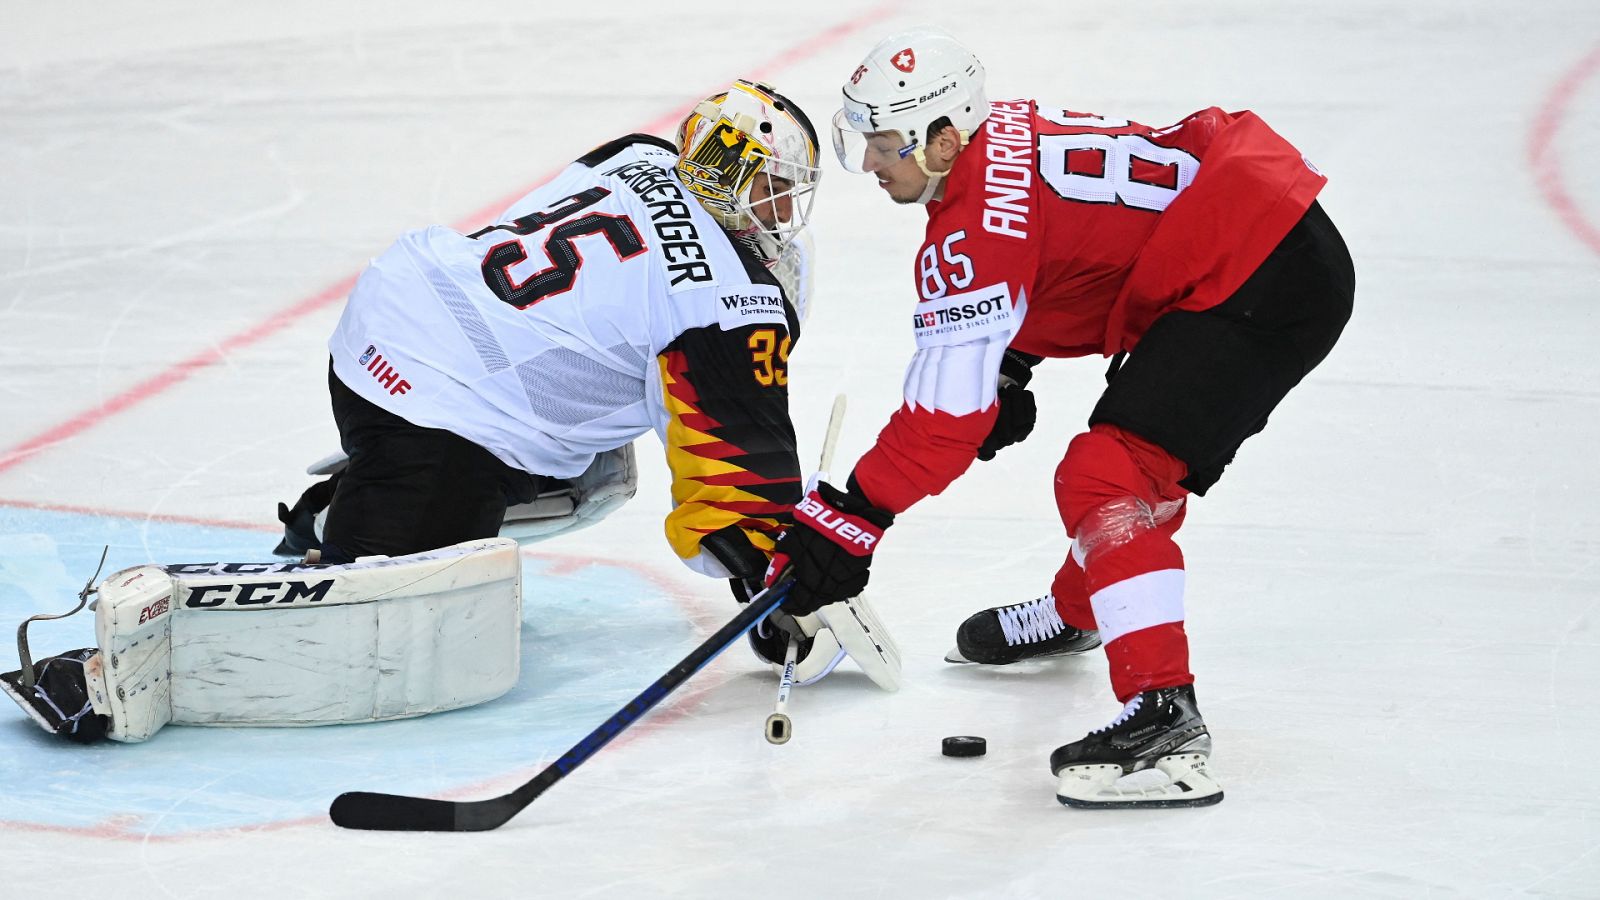 Hockey hielo - Campeonato del mundo masculino 1/4 Final: Suiza - Alemania